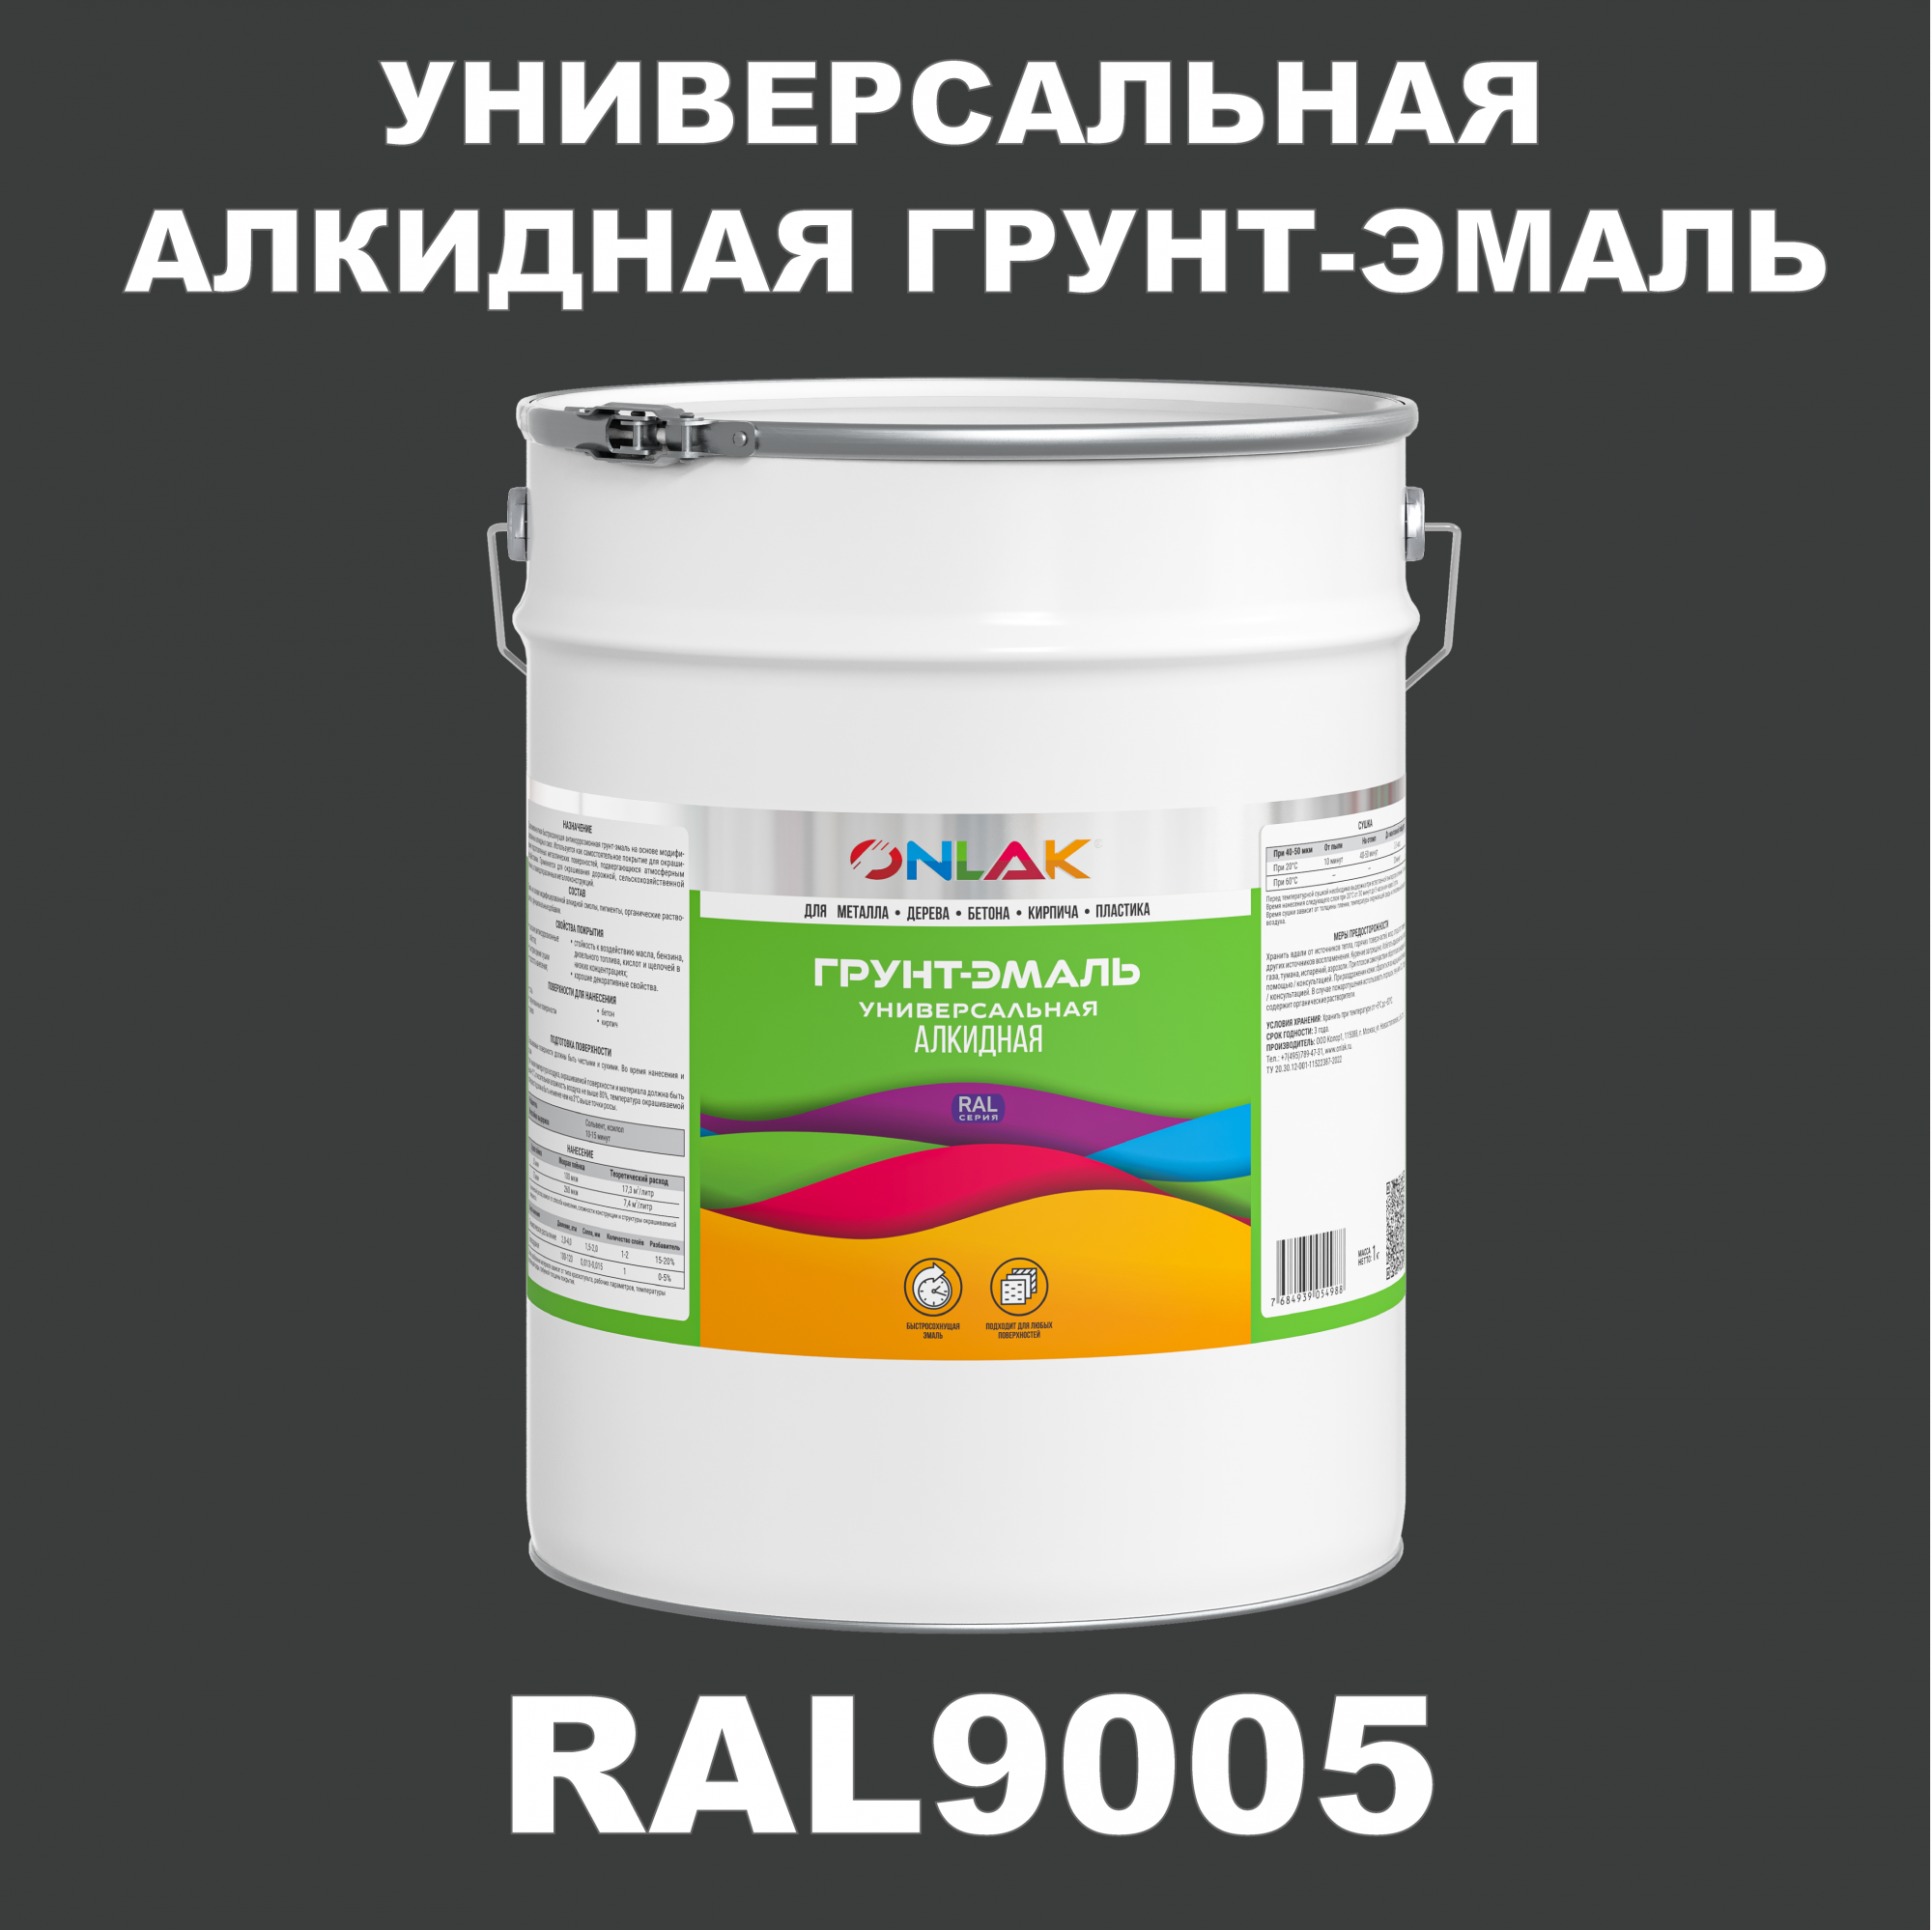 Грунт-эмаль ONLAK 1К RAL9005 антикоррозионная алкидная по металлу по ржавчине 20 кг грунт эмаль neomid по ржавчине быстросохнущая алкидная серая 0 9 кг